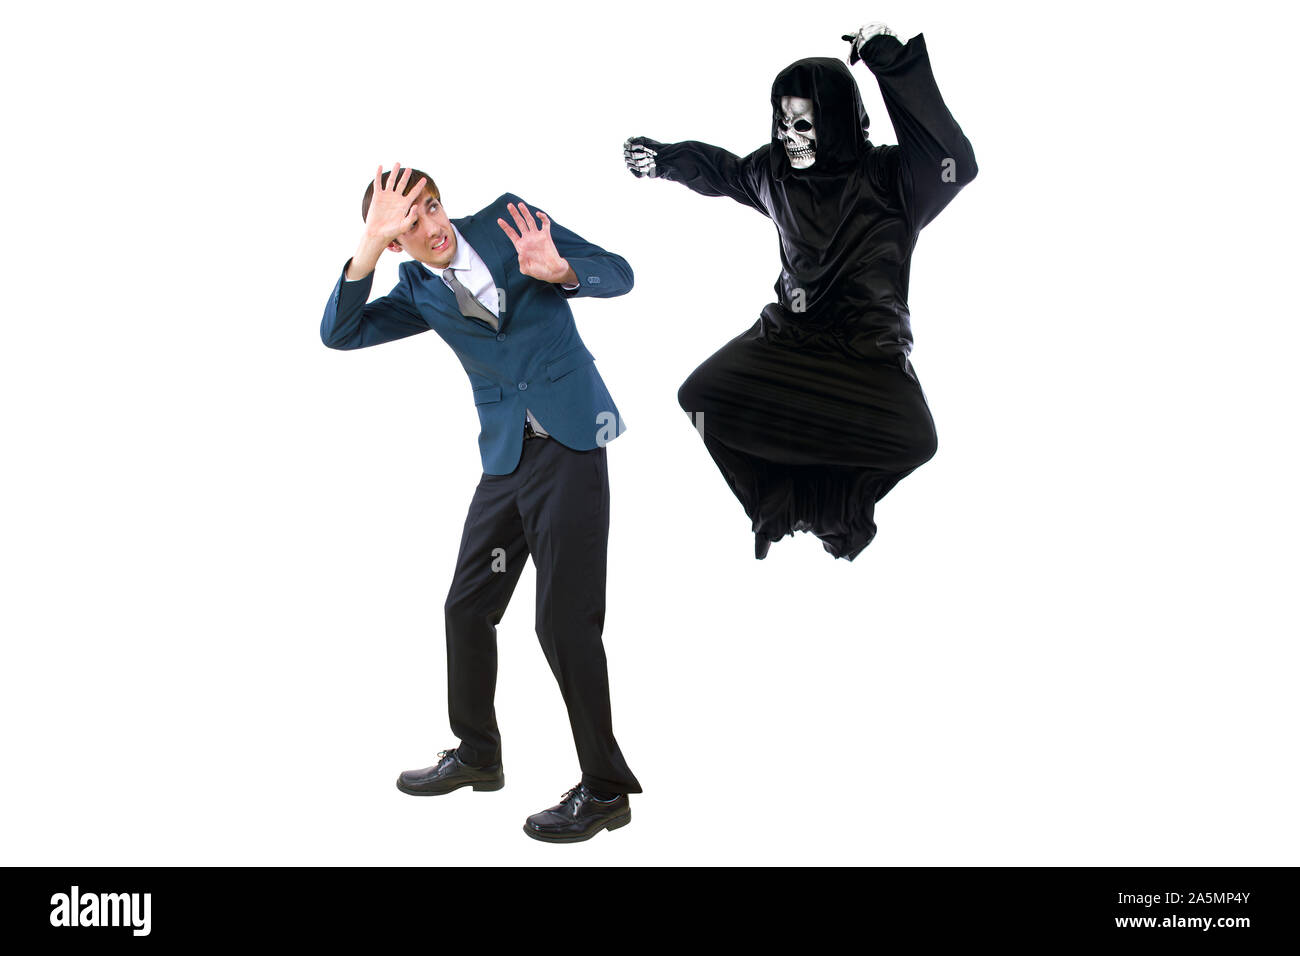 Homme dans un costume Halloween Grim Reaper ghost pourchasser, moqueries et se moquer de peur businessman running away. Peut aussi représenter la mort à la suite d'une ma Banque D'Images